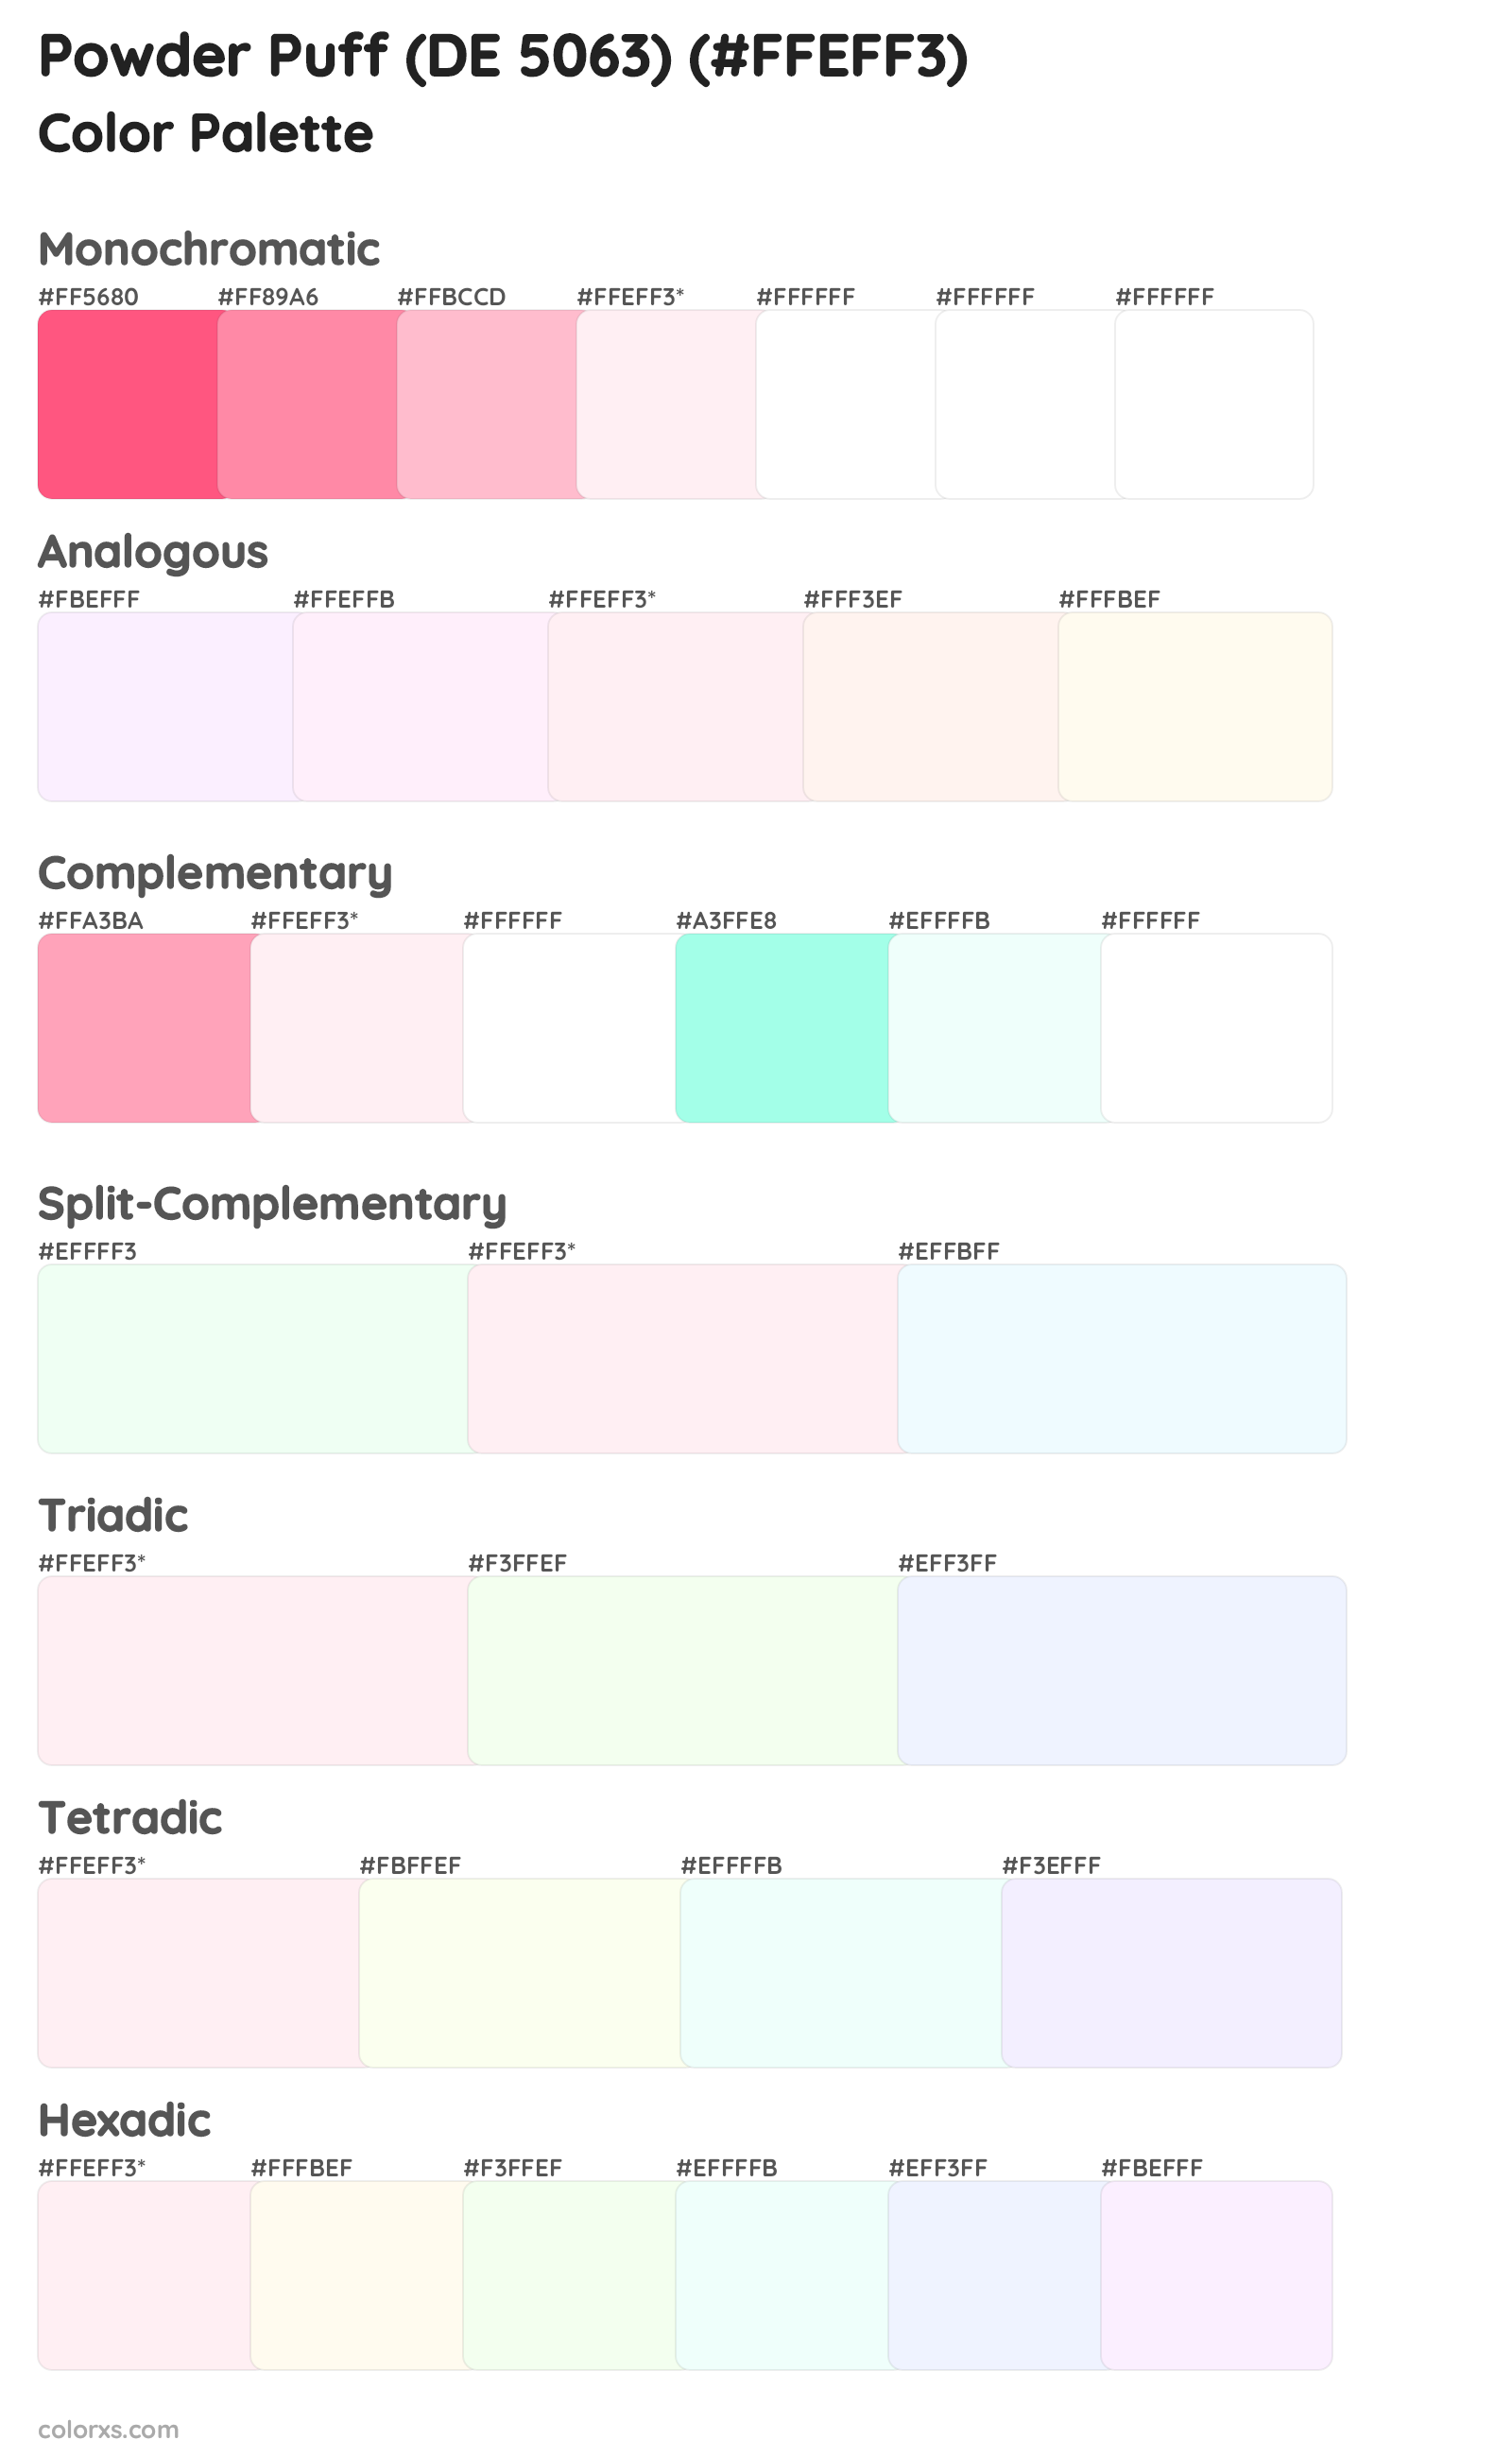 Powder Puff (DE 5063) Color Scheme Palettes